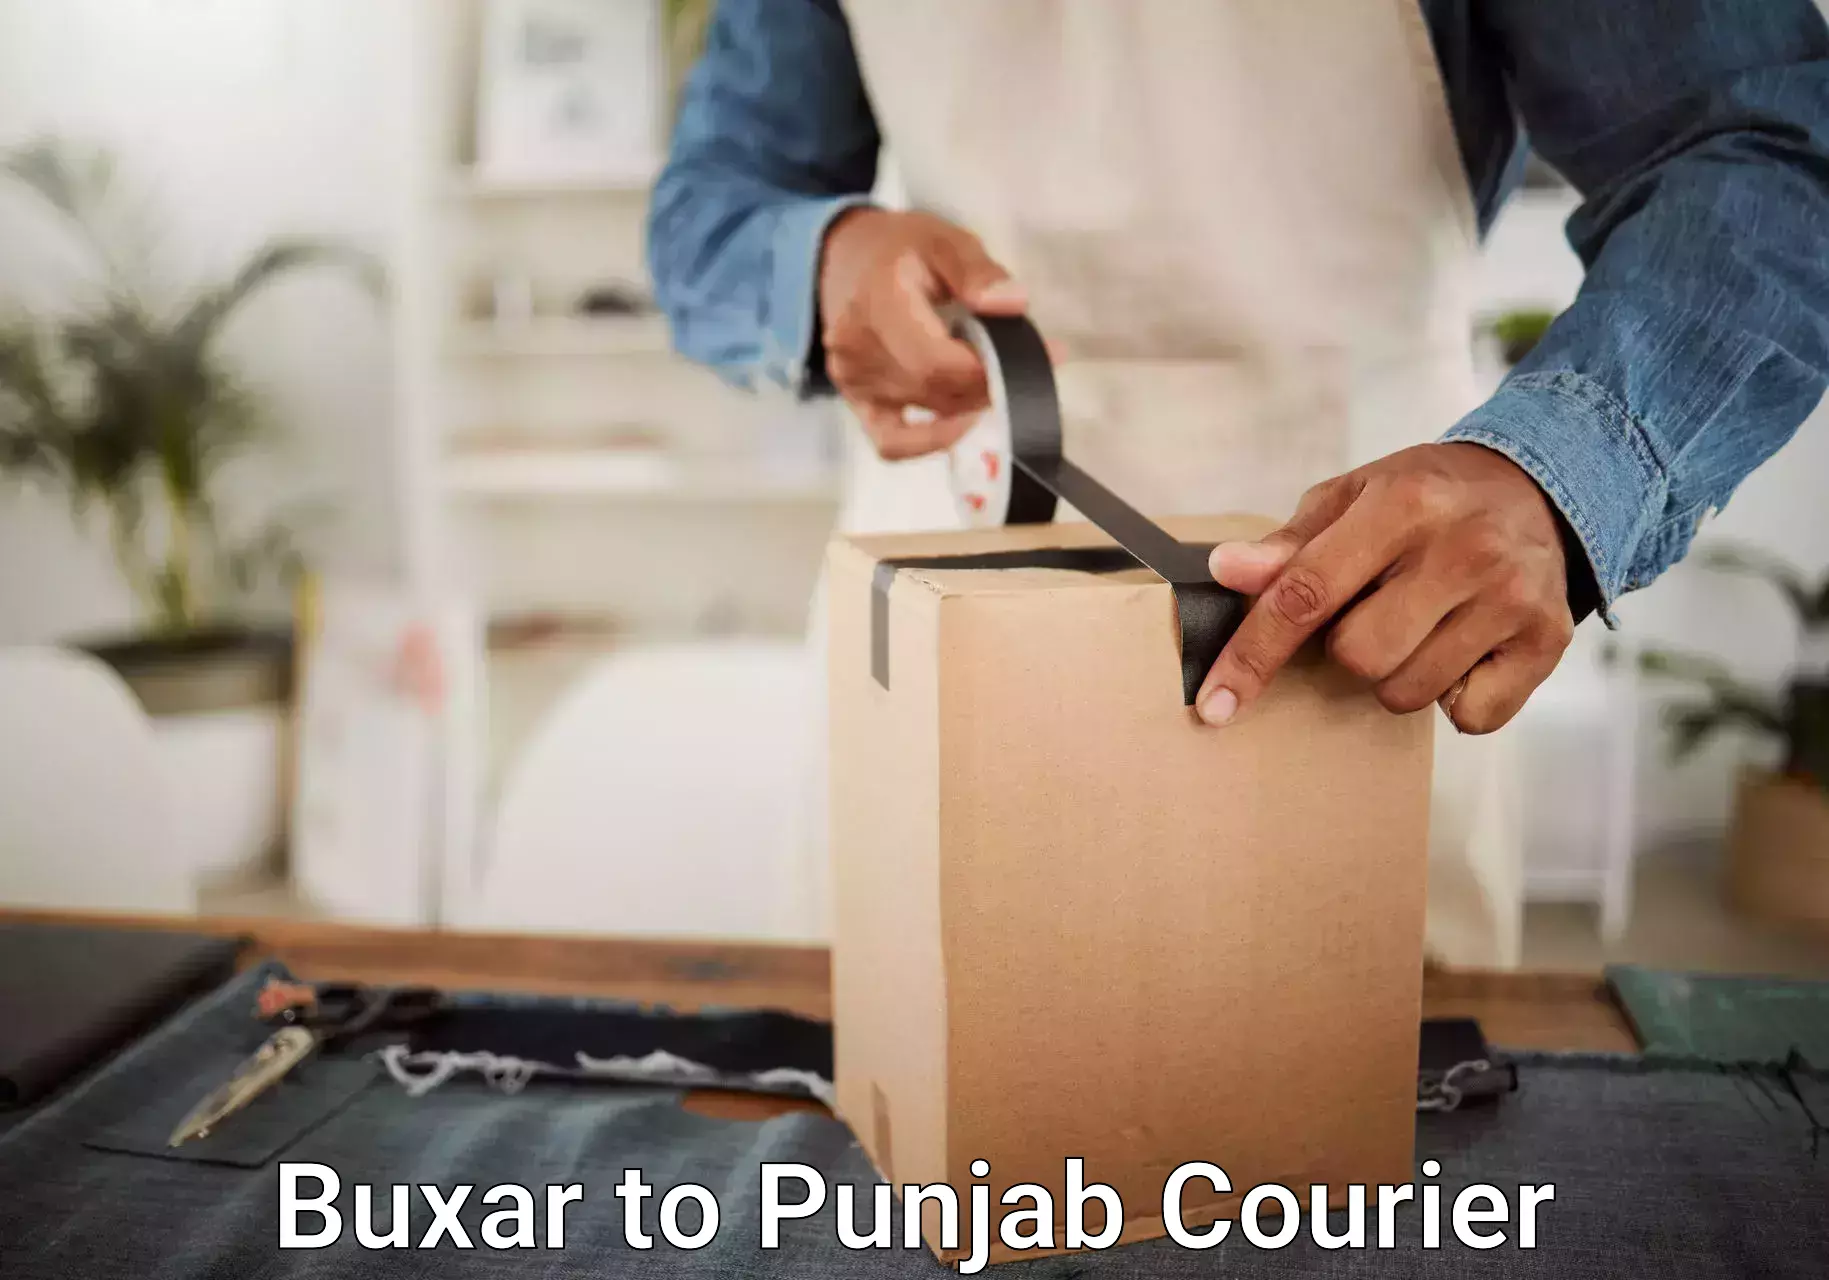 Luggage transport company Buxar to Amritsar